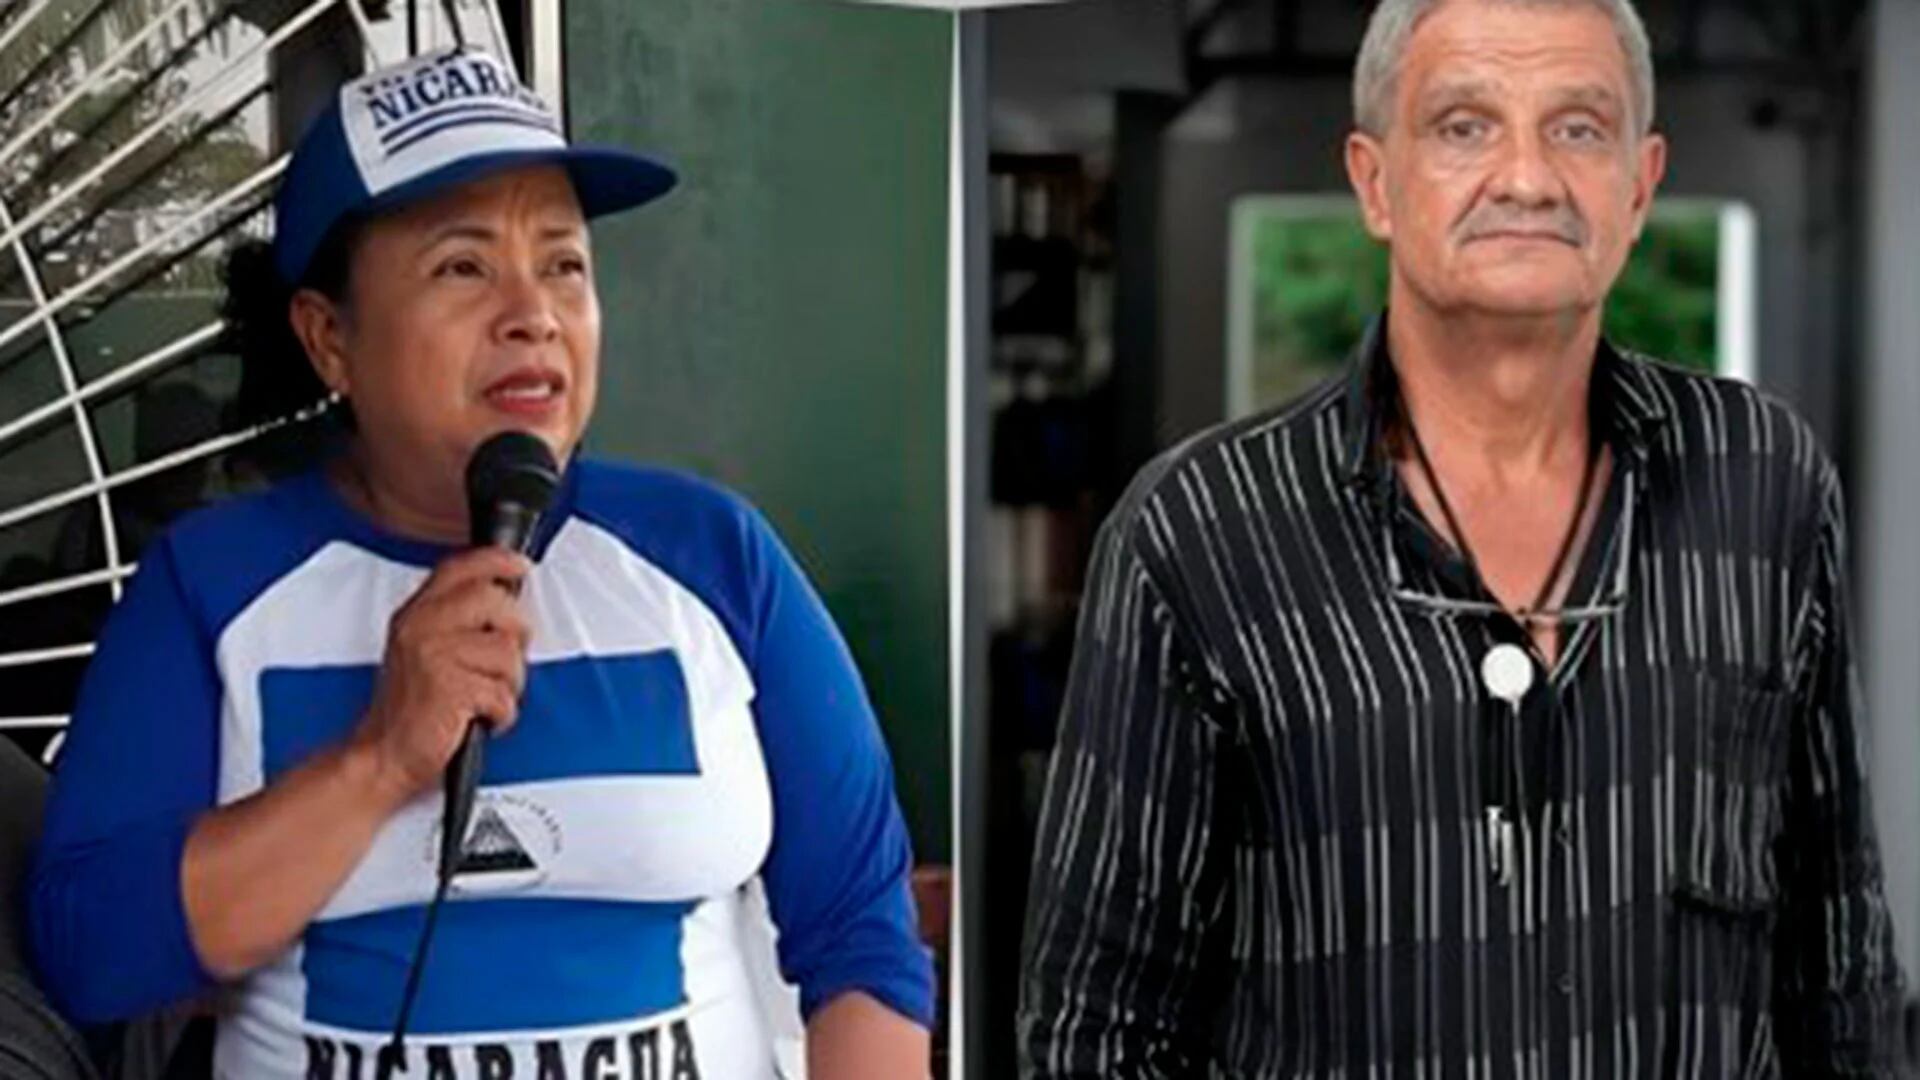 La organización Monitoreo Azul y Blanco alertó sobre una nueva ola de detenciones en Nicaragua